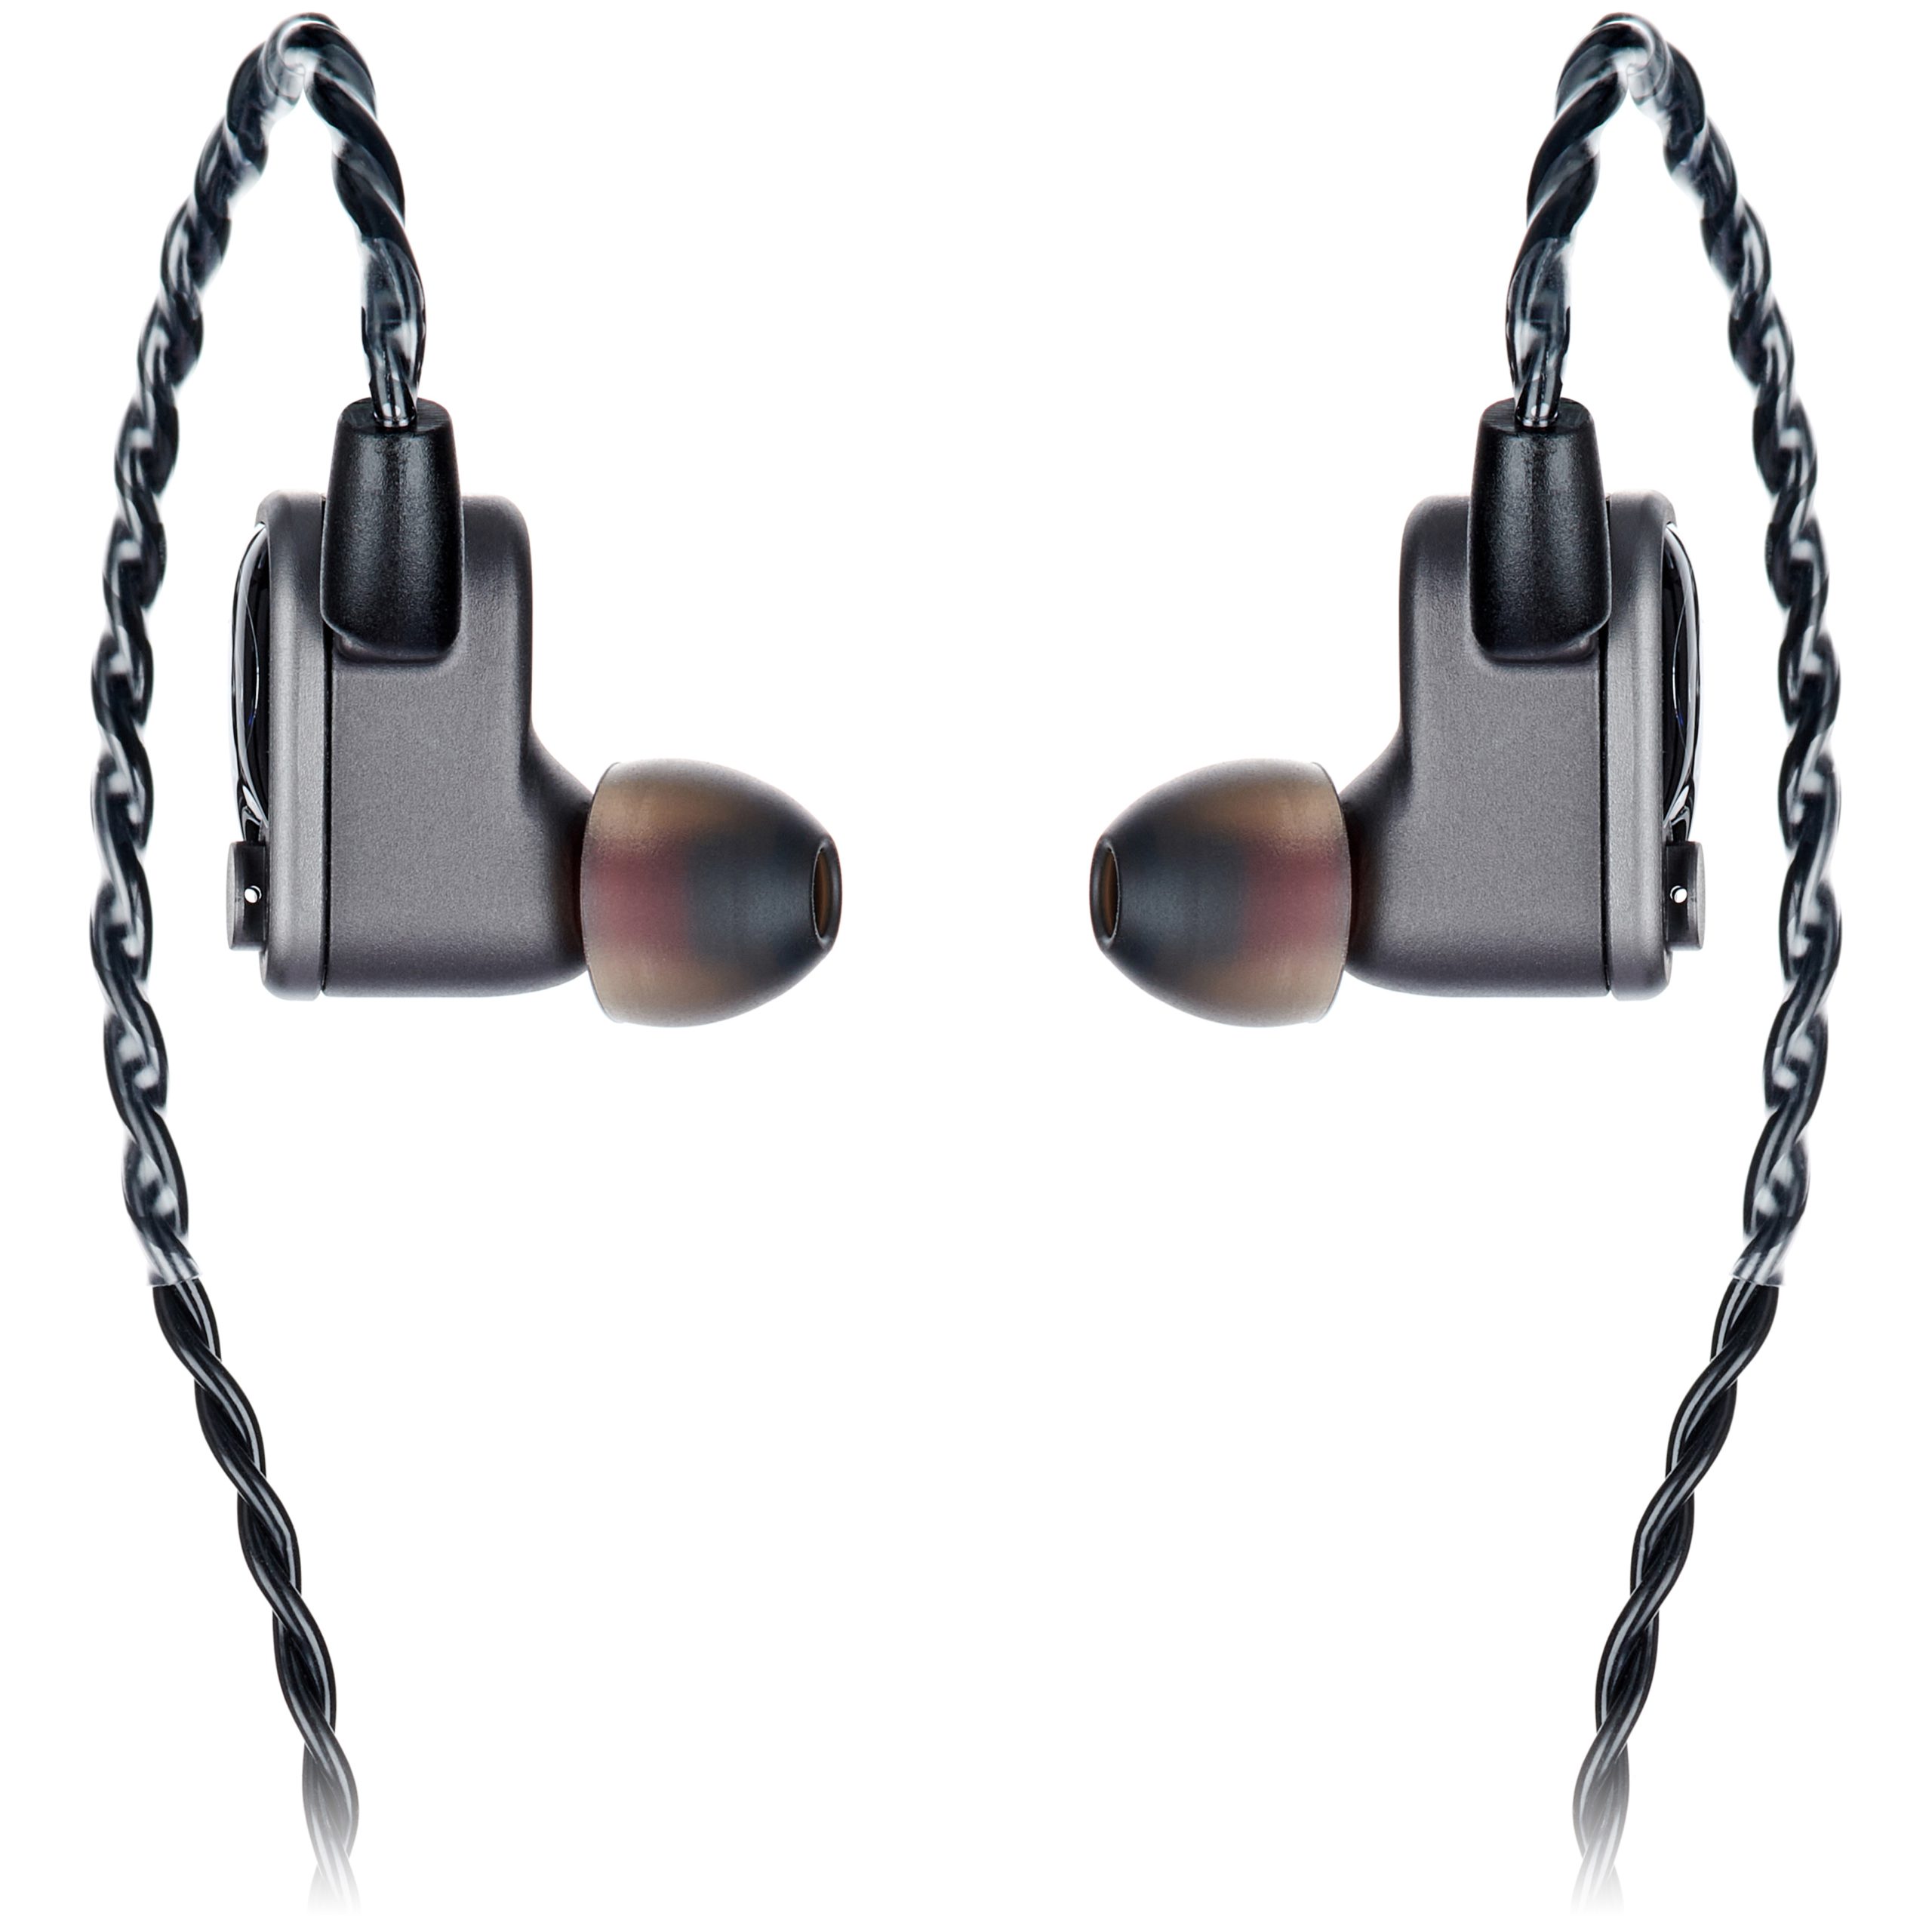 64 Audio U6t Review | headphonecheck.com